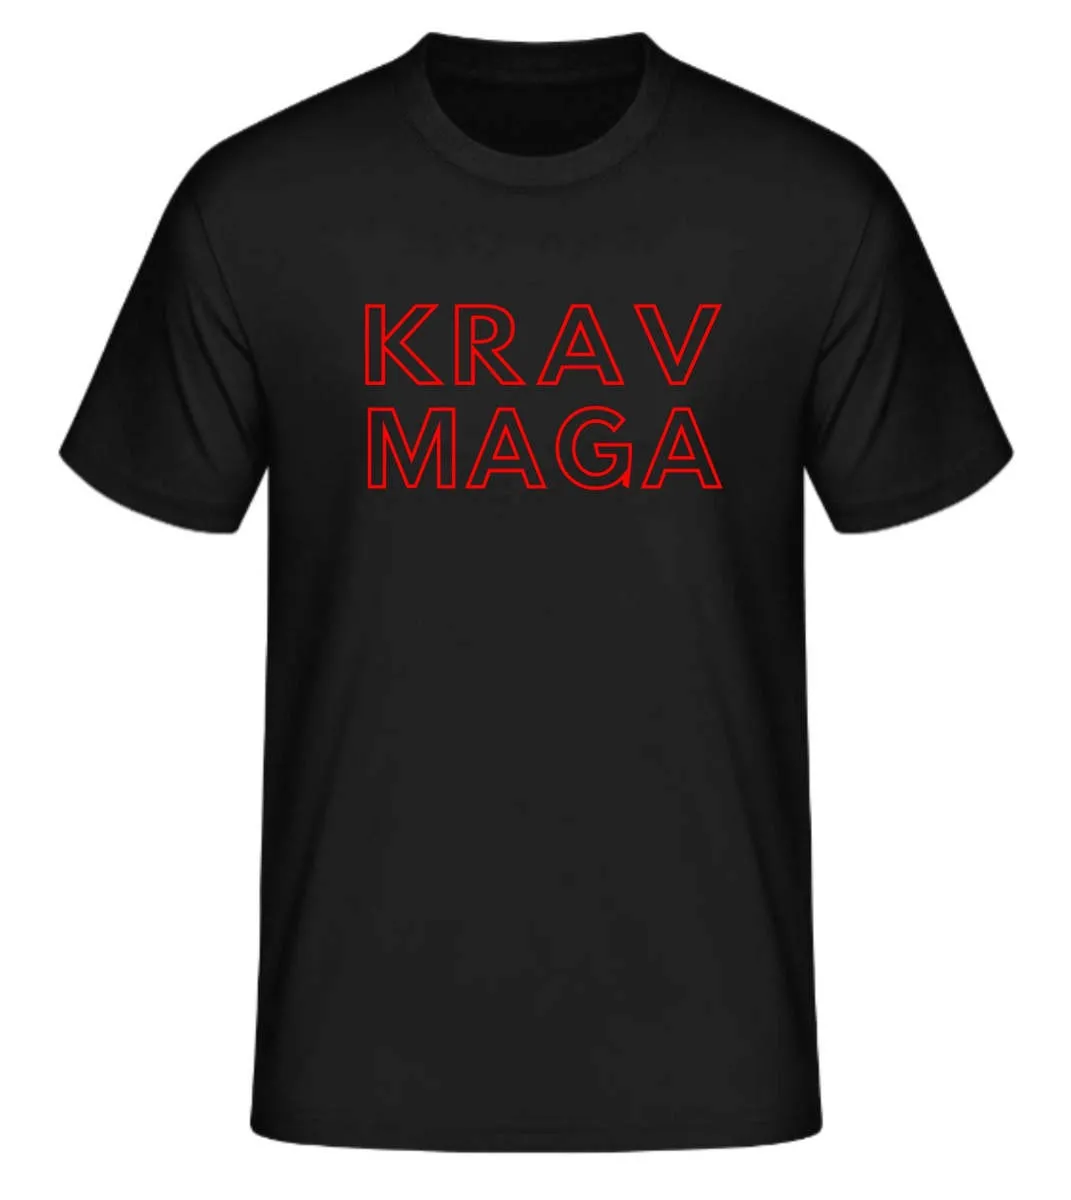 Camiseta Krav Maga